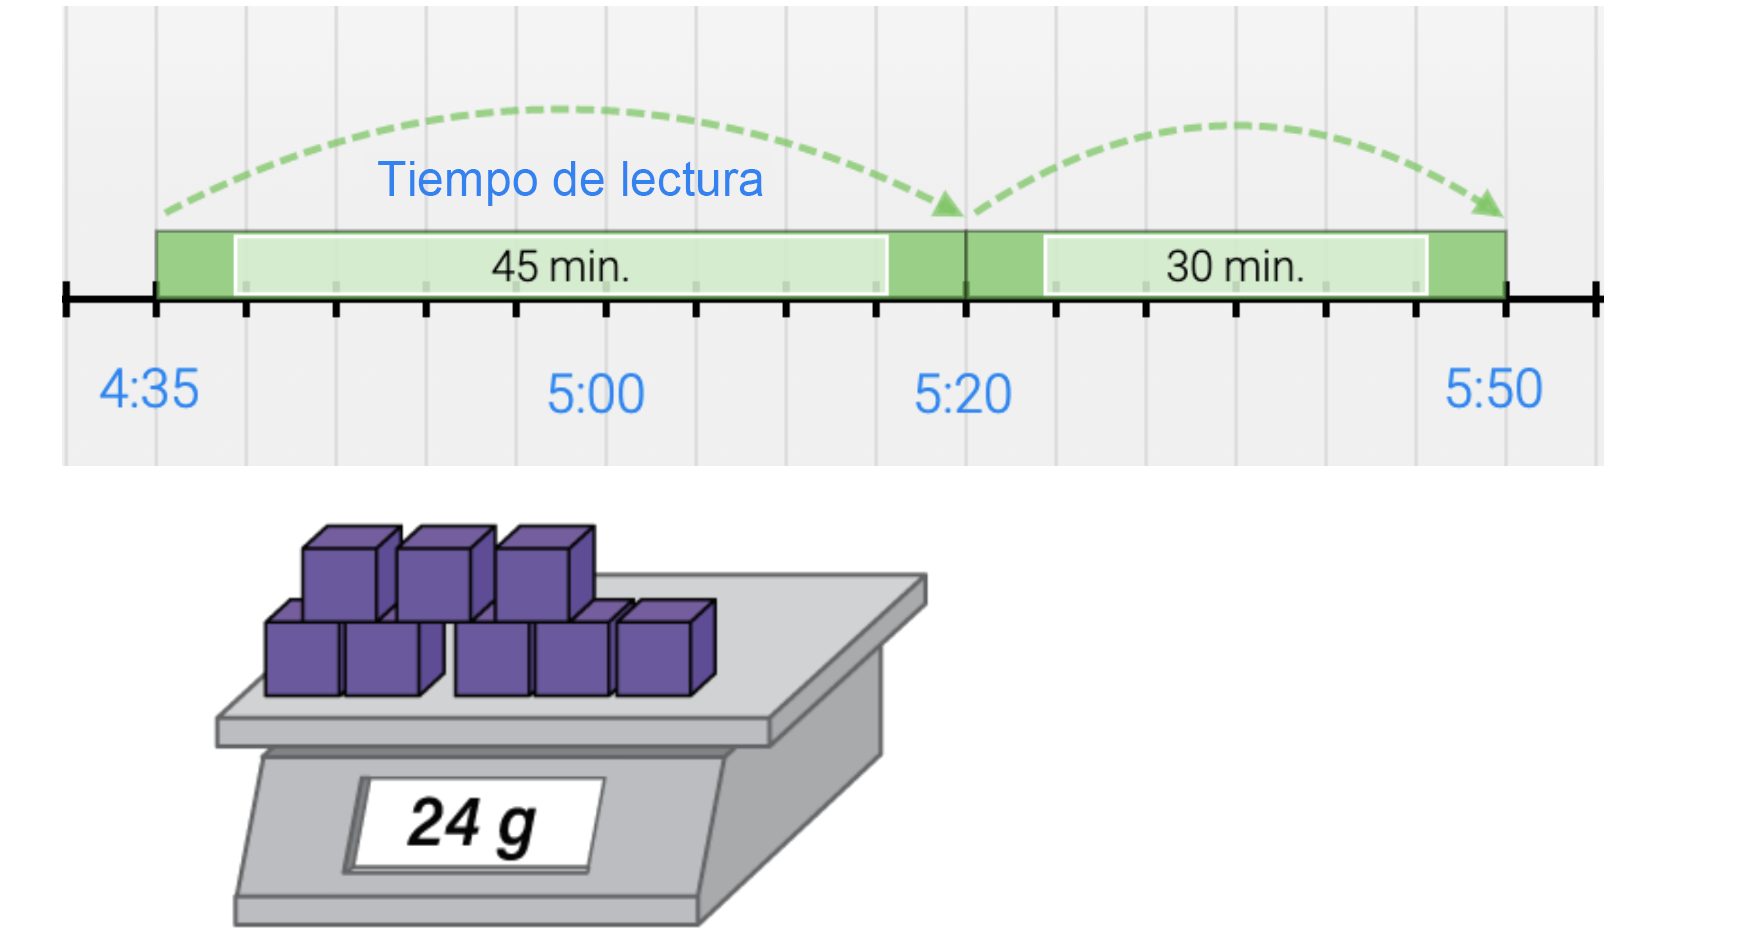 Primero, una recta numérica que muestra los tiempos de lectura, de 4:35 salta 45 minutos a 5:20. Luego, salta 30 minutos a 5:50. Después, 8 cubos morados sobre una balanza que marca 24 gramos.